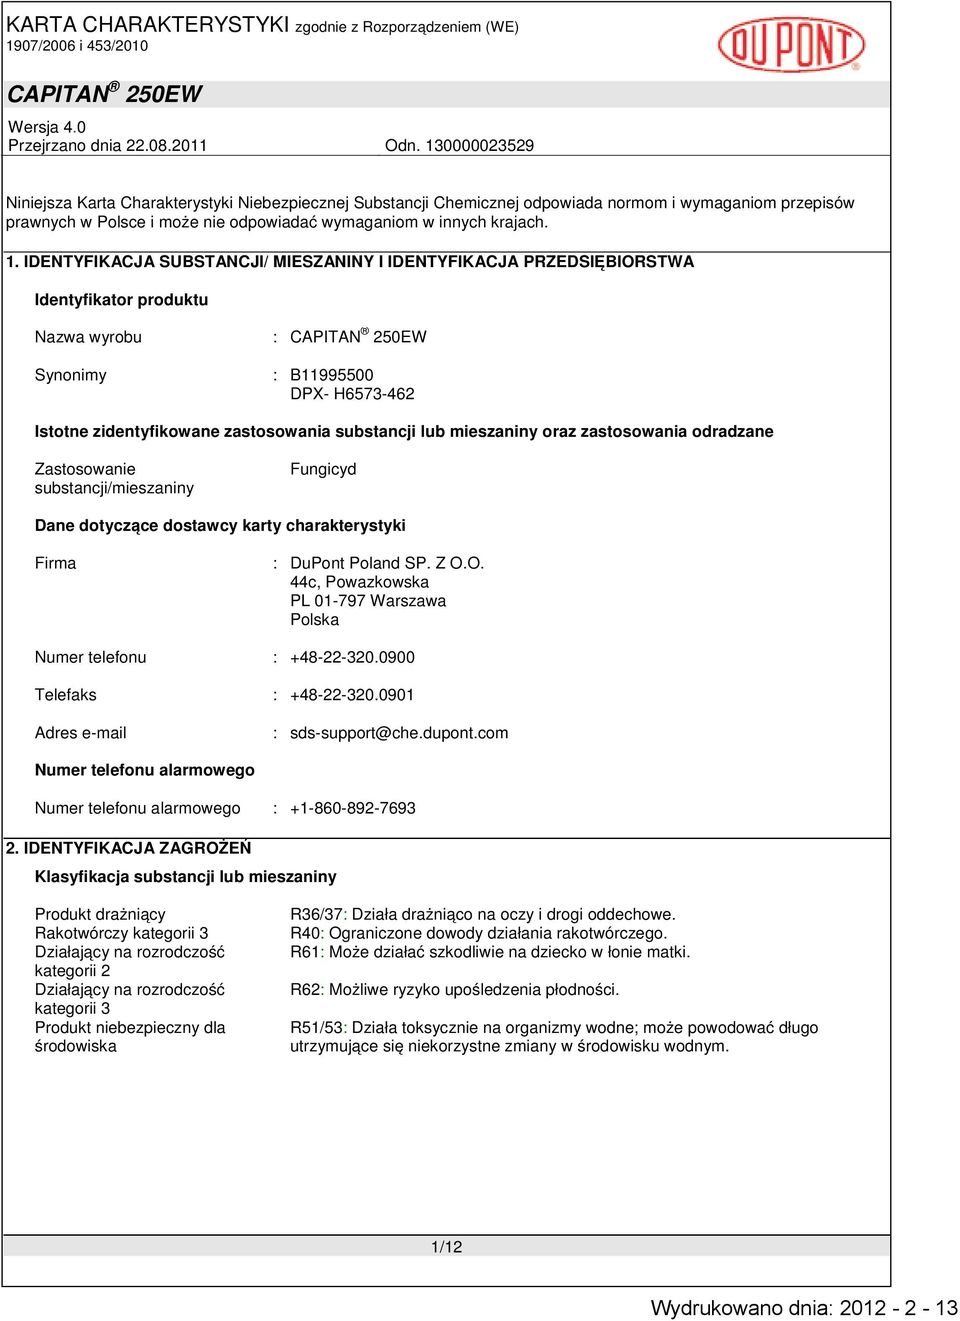 mieszaniny oraz zastosowania odradzane Zastosowanie substancji/mieszaniny Fungicyd Dane dotyczące dostawcy karty charakterystyki Firma : DuPont Poland SP. Z O.